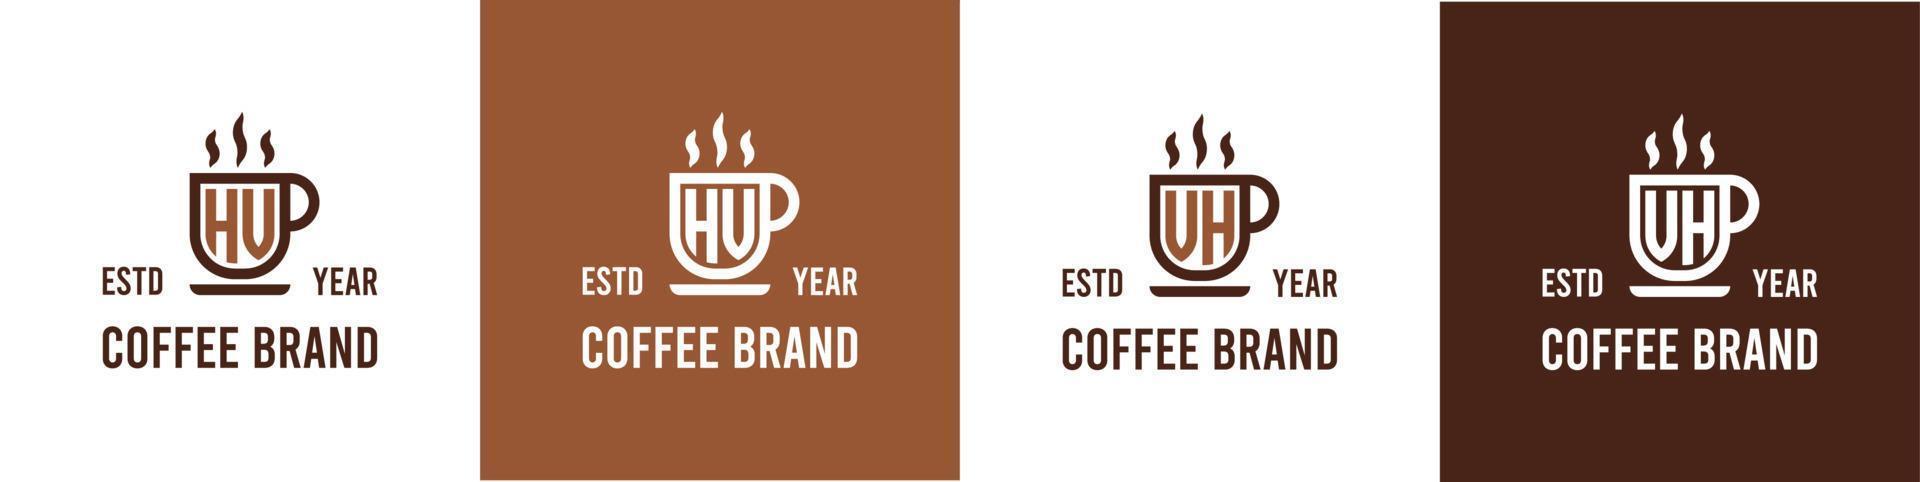 letra hv y vh café logo, adecuado para ninguna negocio relacionado a café, té, o otro con hv o vh iniciales. vector